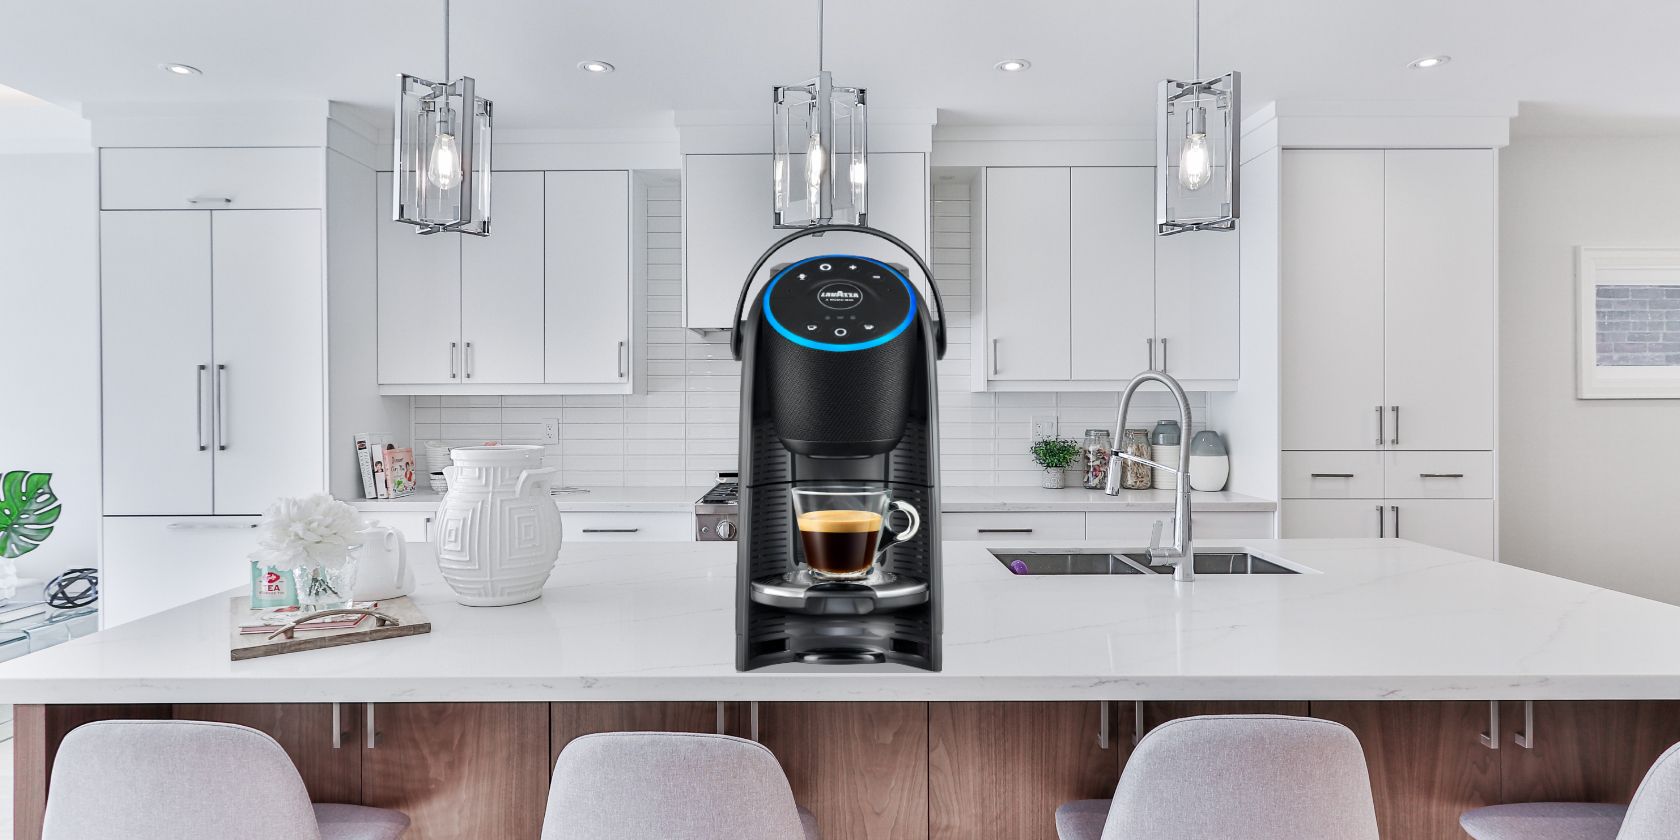 Lavazza's smart coffee machine on a kitchen counter